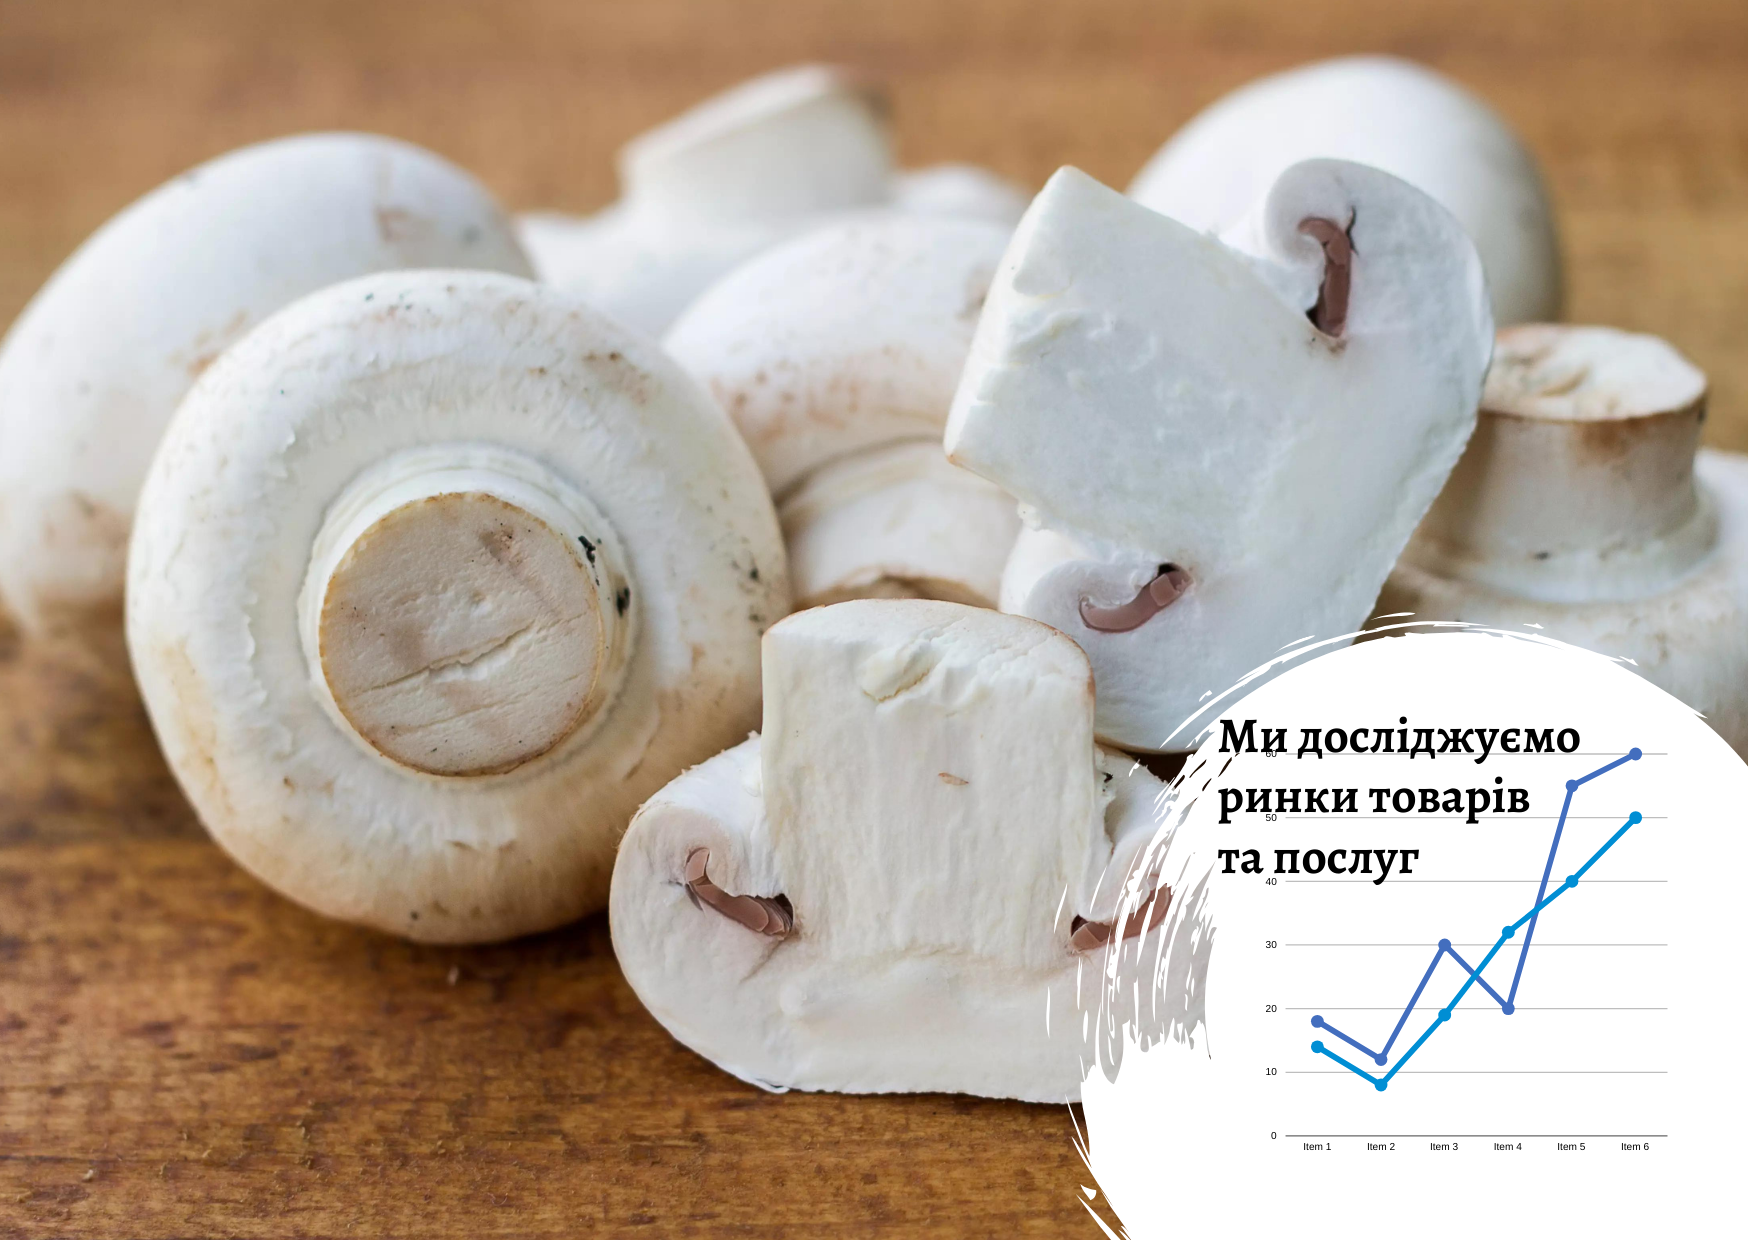 Ринок грибів в Україні: огляд та прогноз